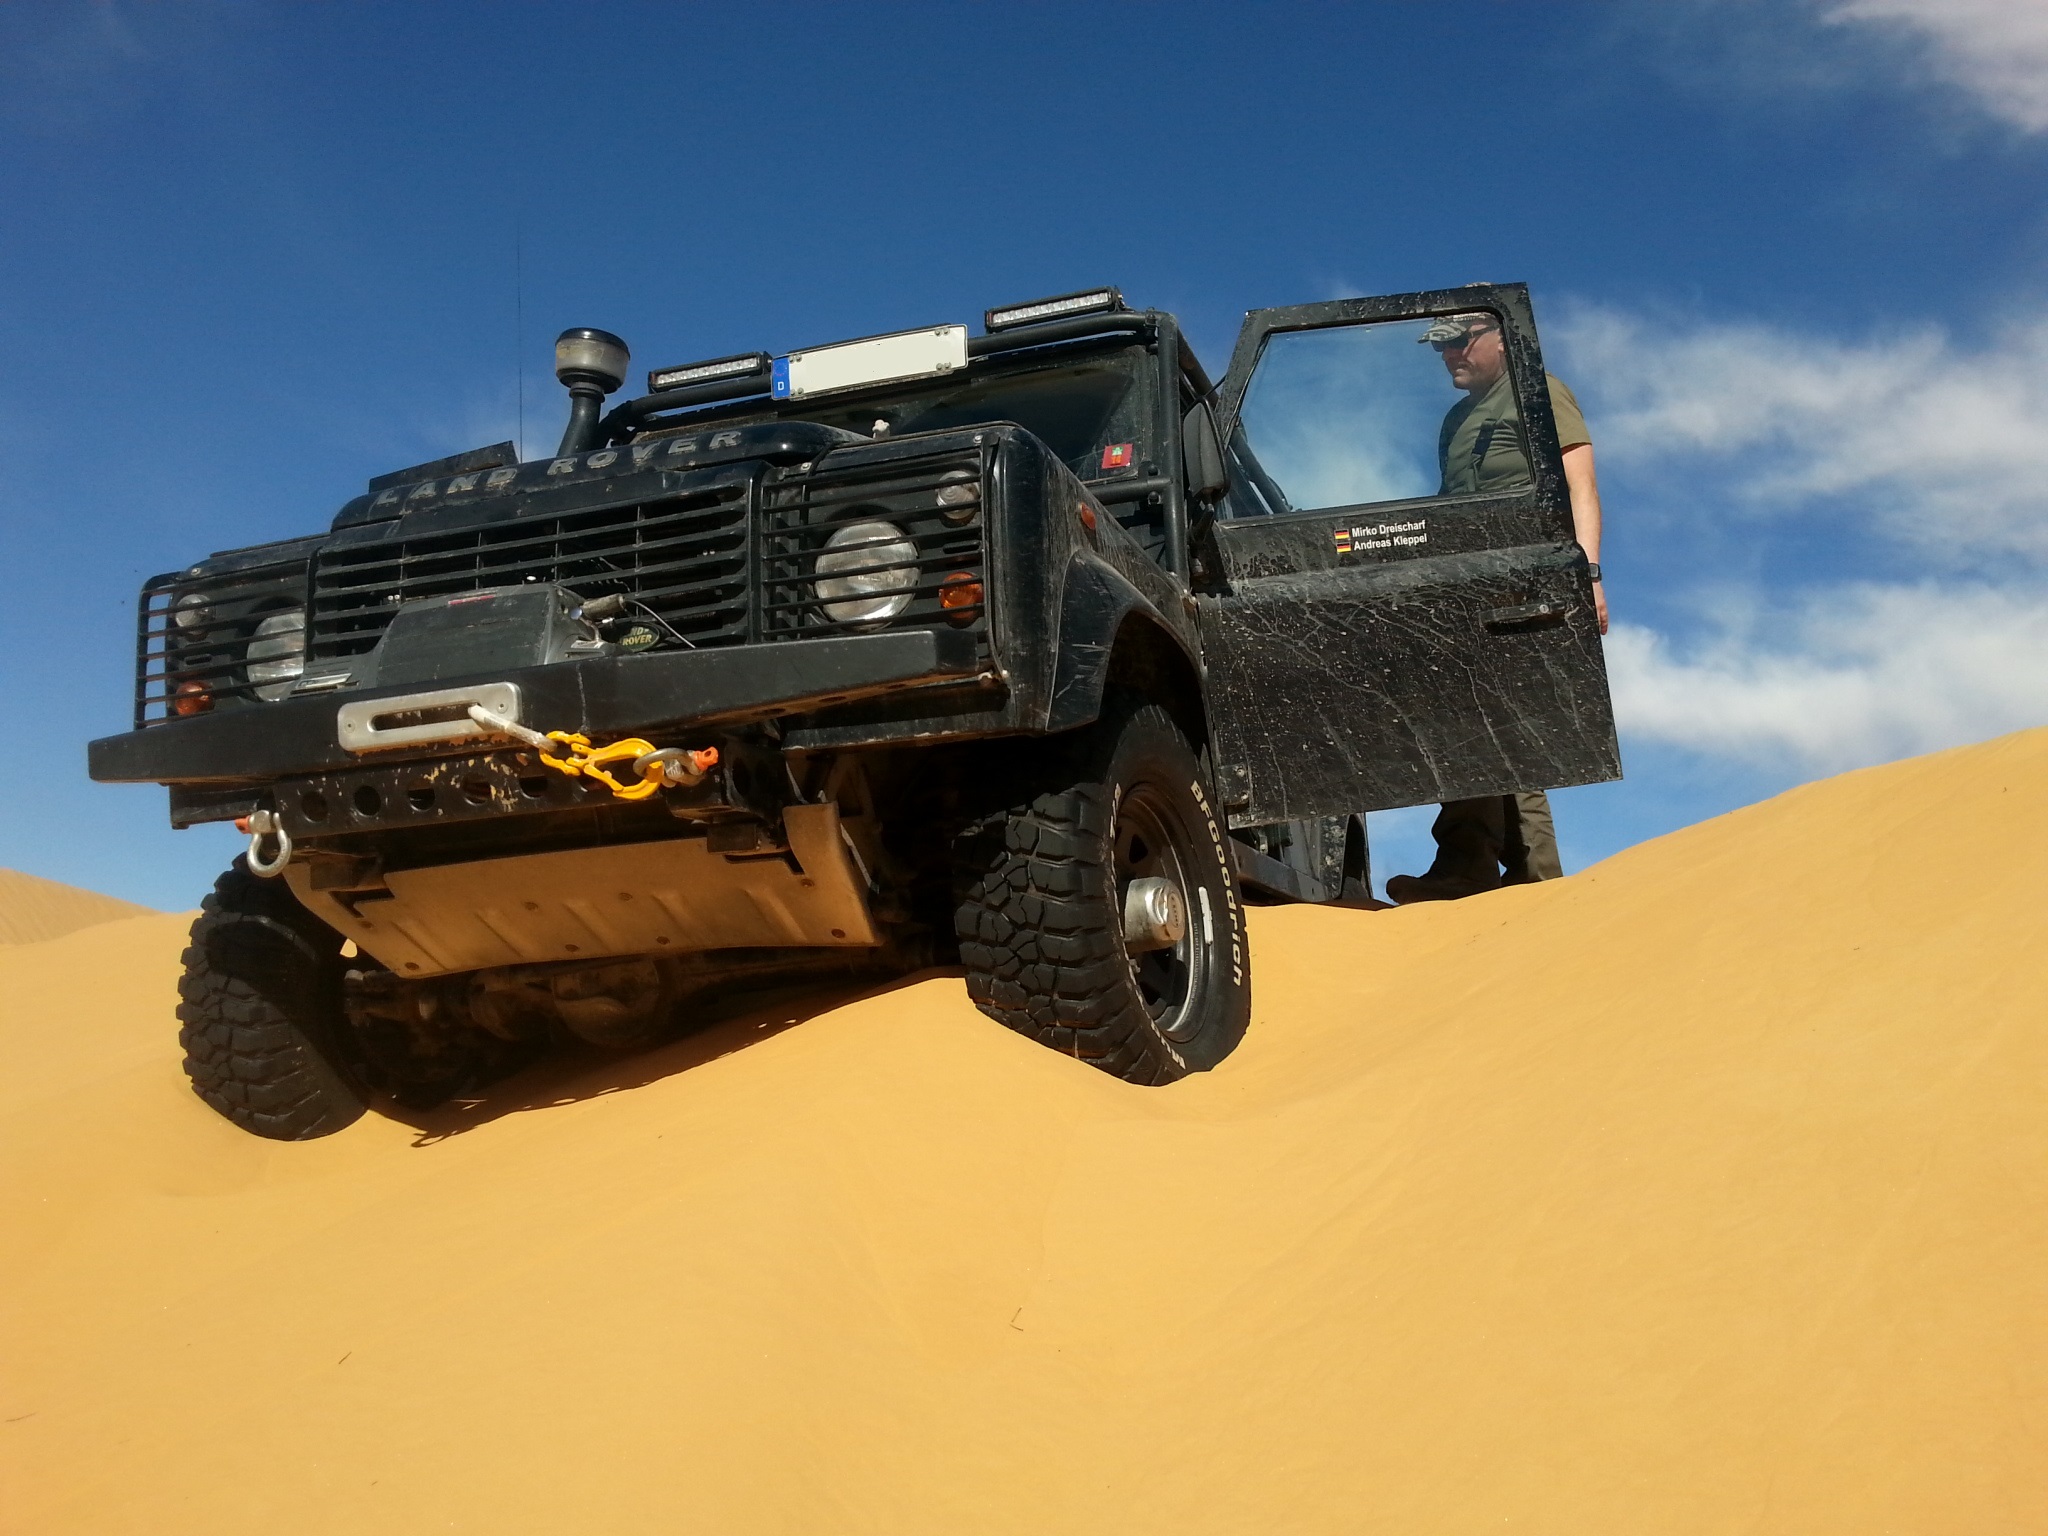 Sehr feiner Sand zehrt die Kraft auf. Sahara, Tunesien